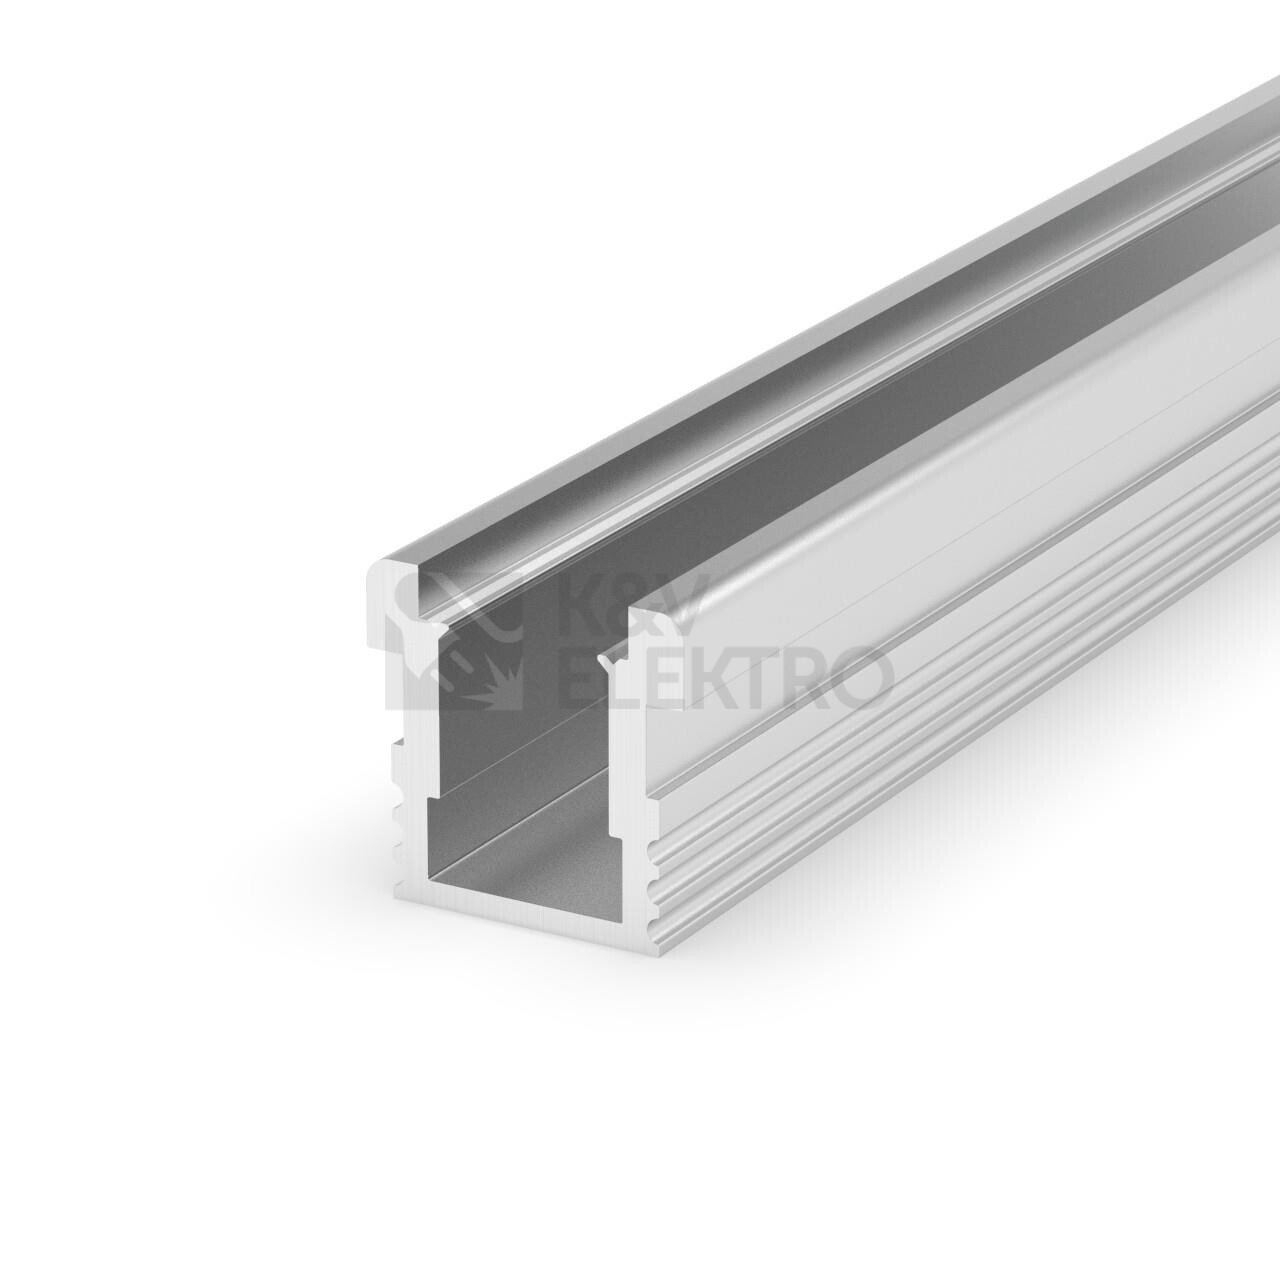 Obrázek produktu  LED profil P24-1 pochozí vysoký stříbrný bez difuzoru 2m 095121 0